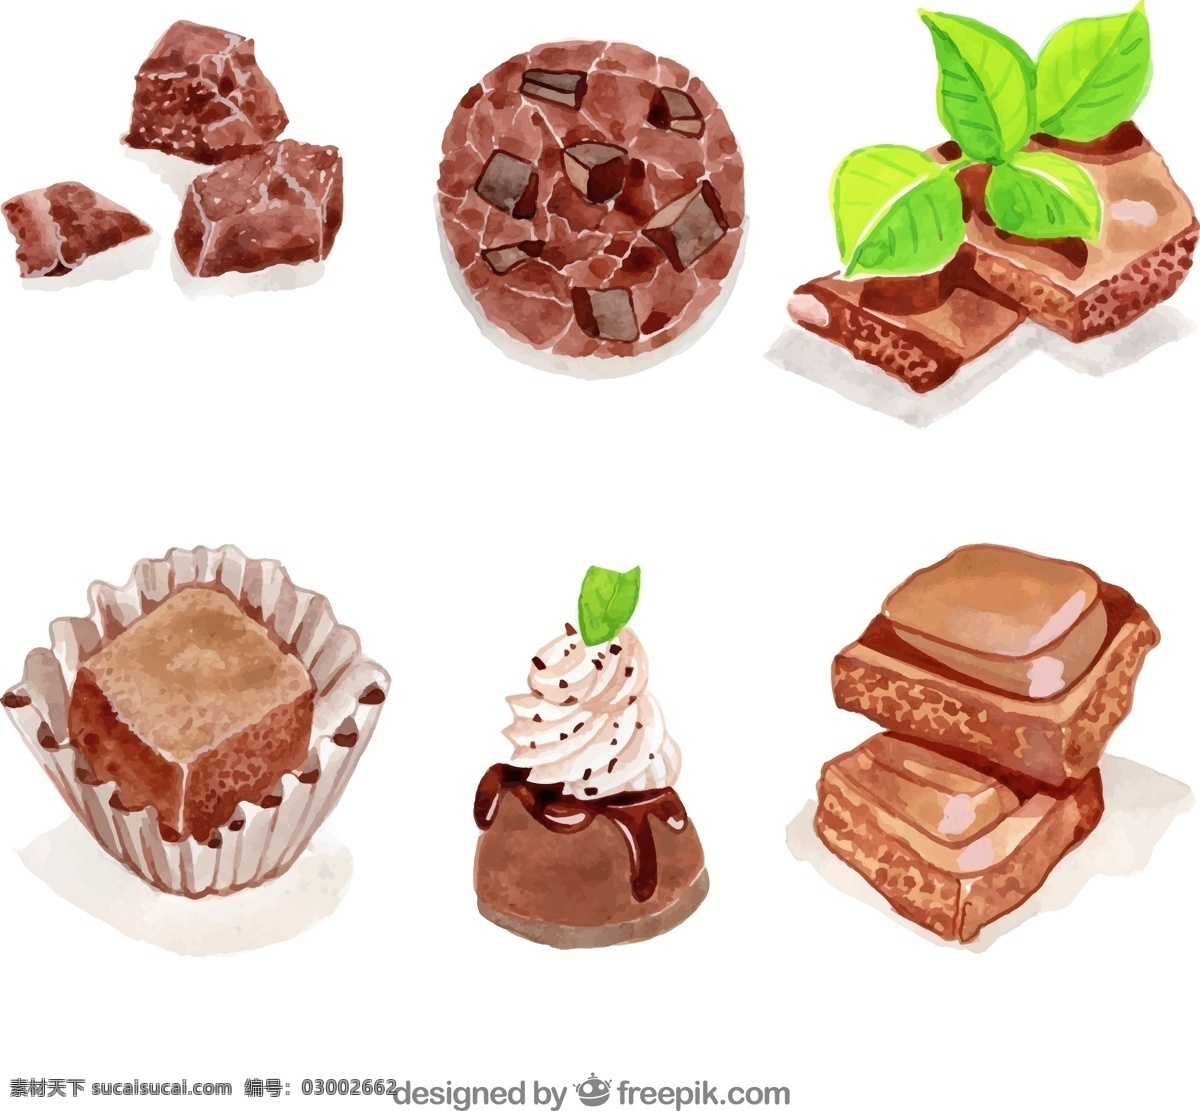 彩绘 美味 巧克力 零食 薄荷 曲奇饼干 生活用品 生活百科 餐饮美食